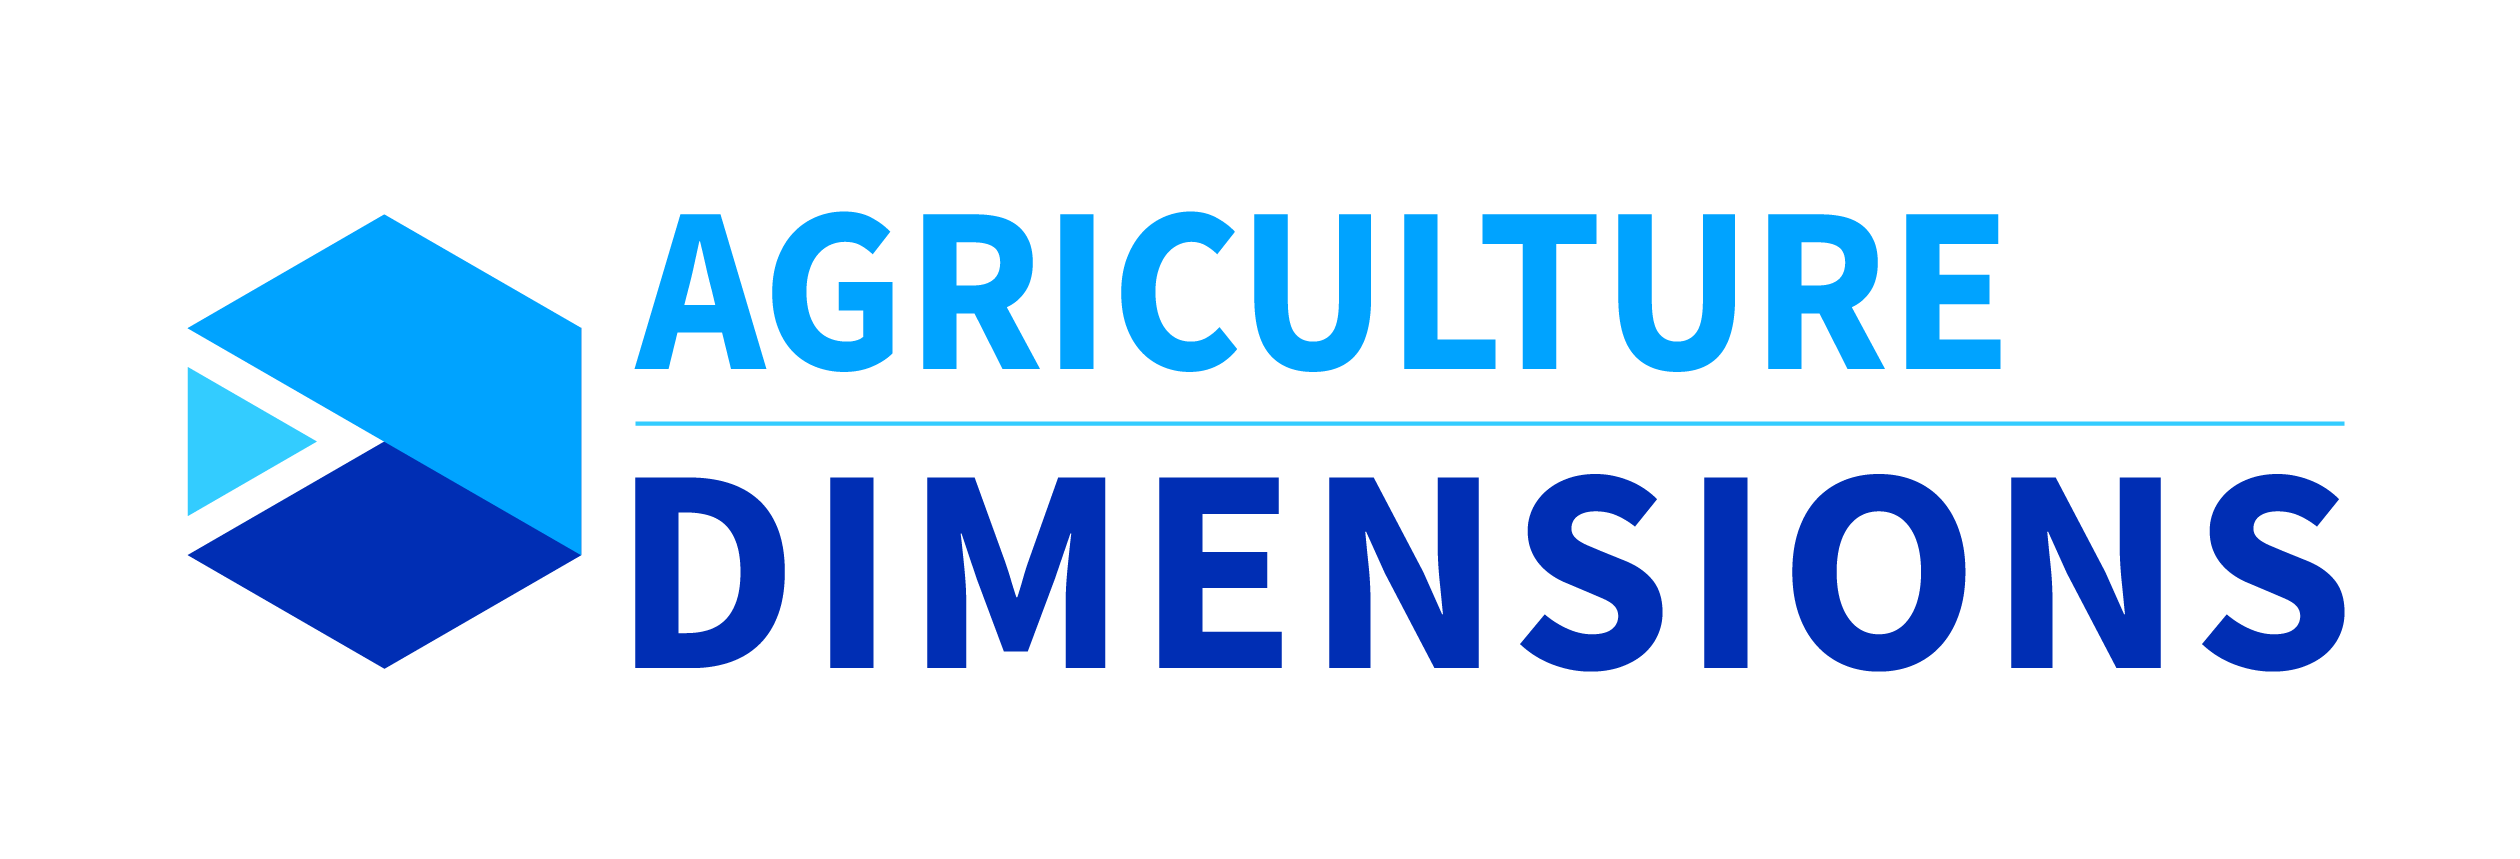 Acceltech Pte Ltd - Dimensions de l'agriculture